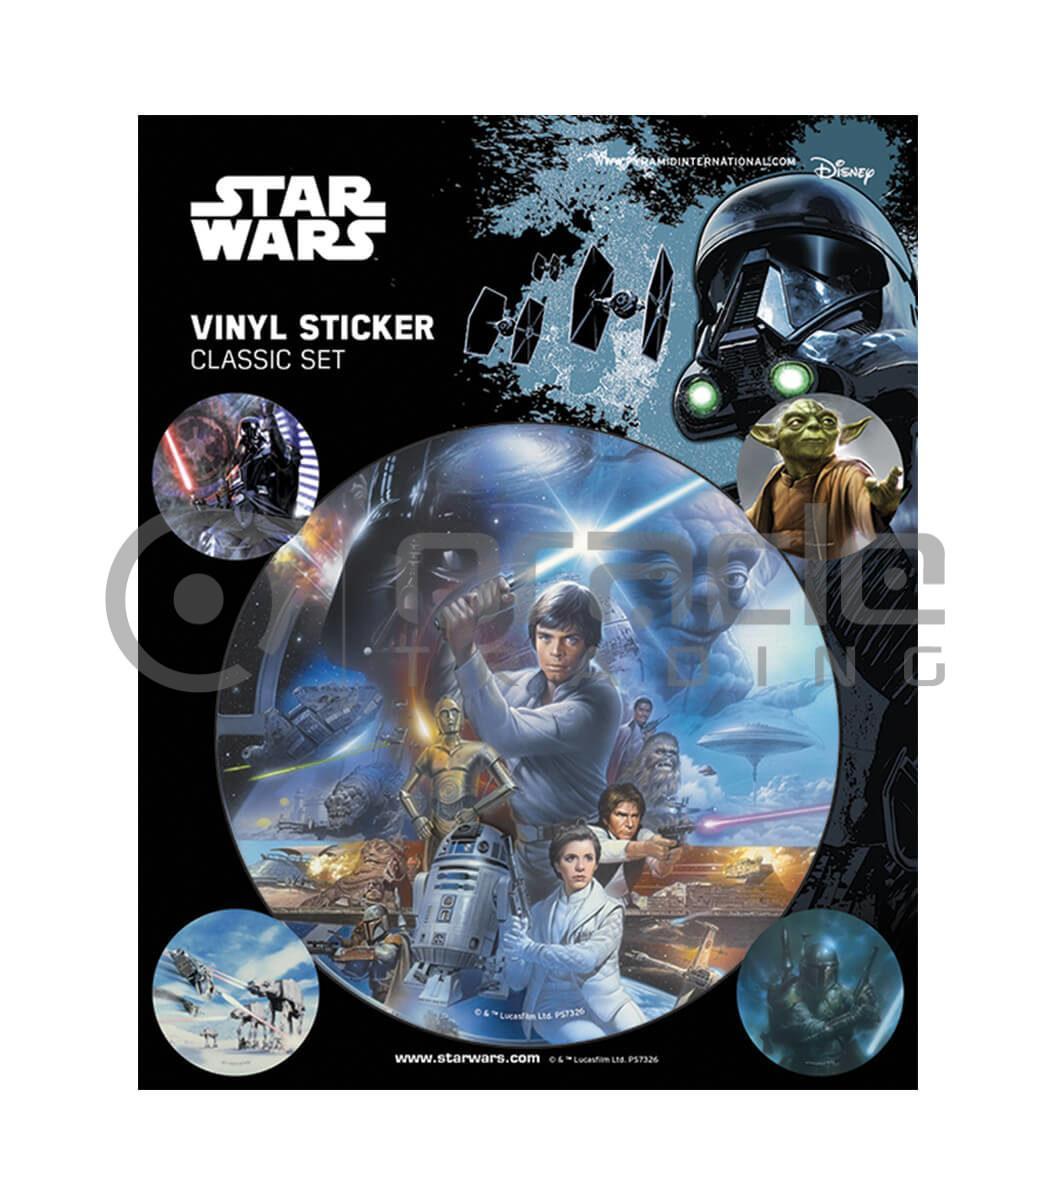 Star Wars Vinyl Sticker Pack